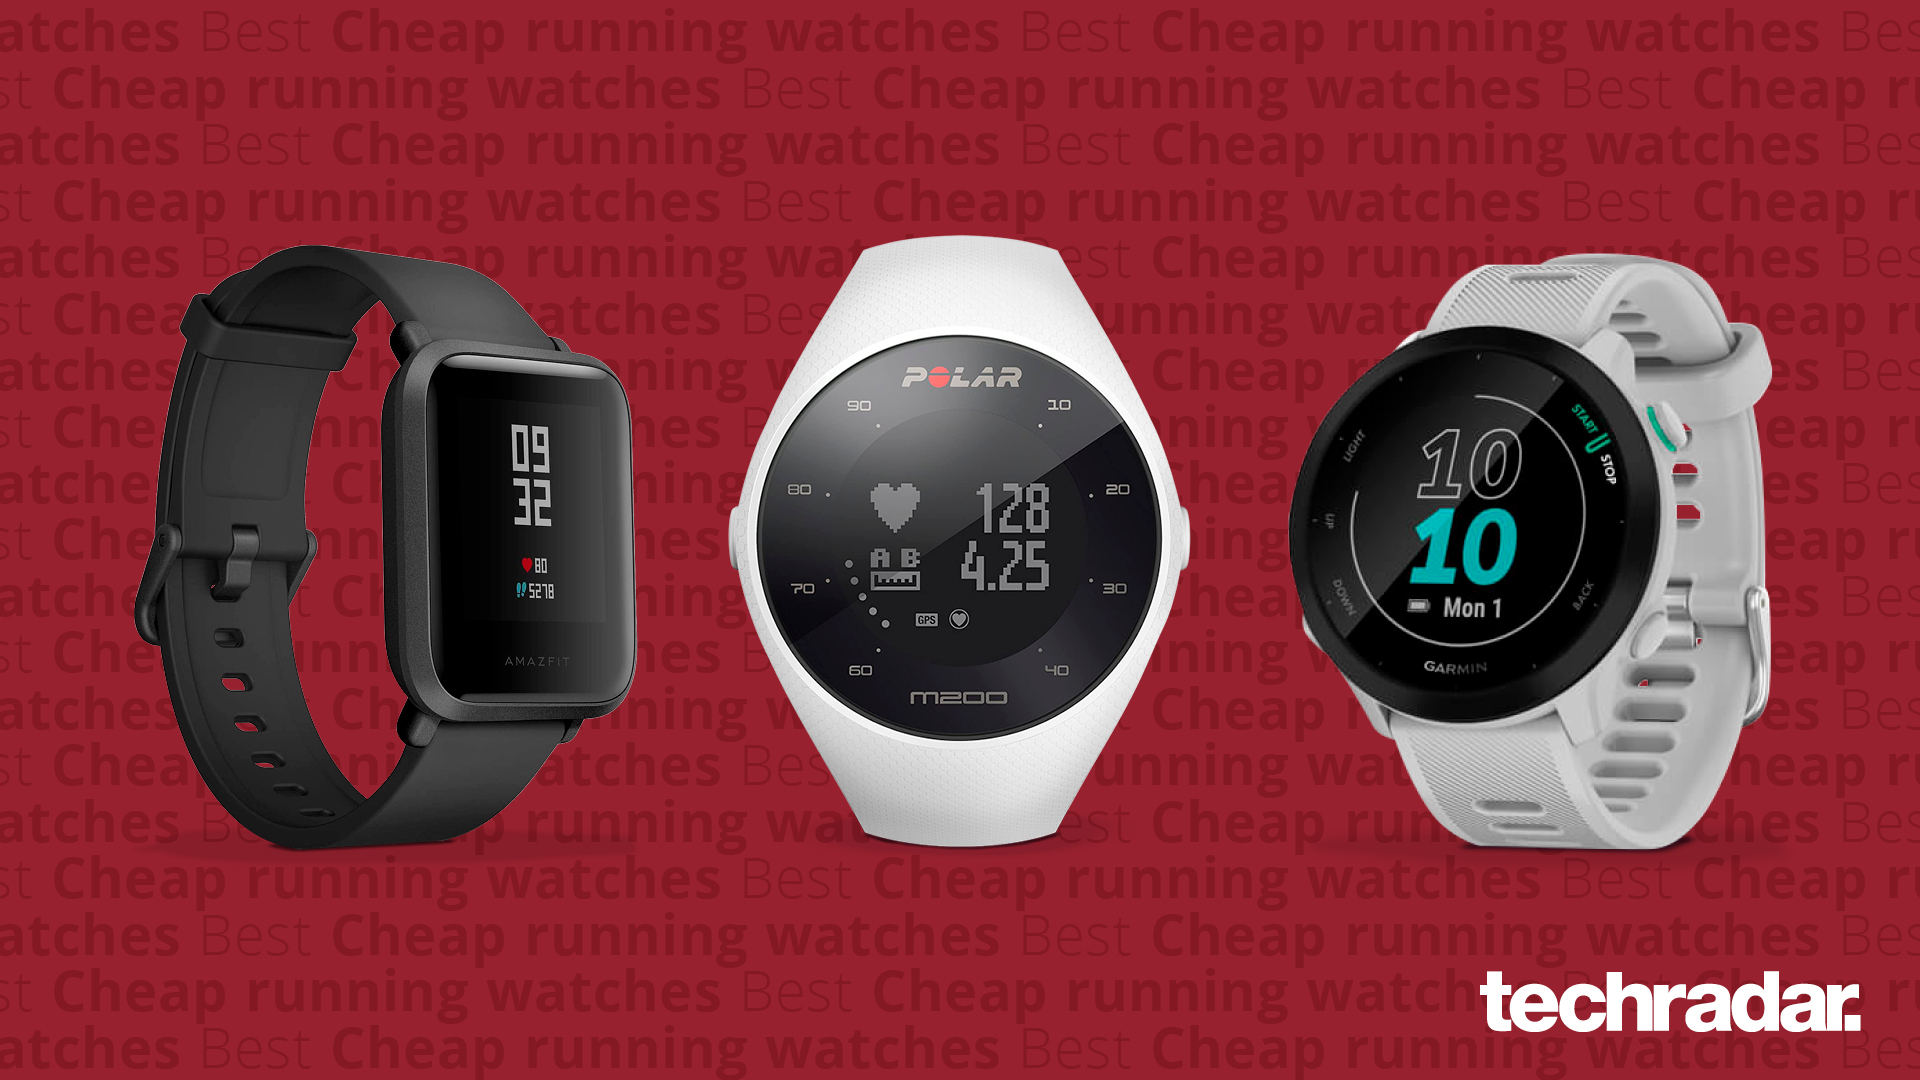 Best cheap running watch 2022 from Garmin, Polar and more | TechRadar